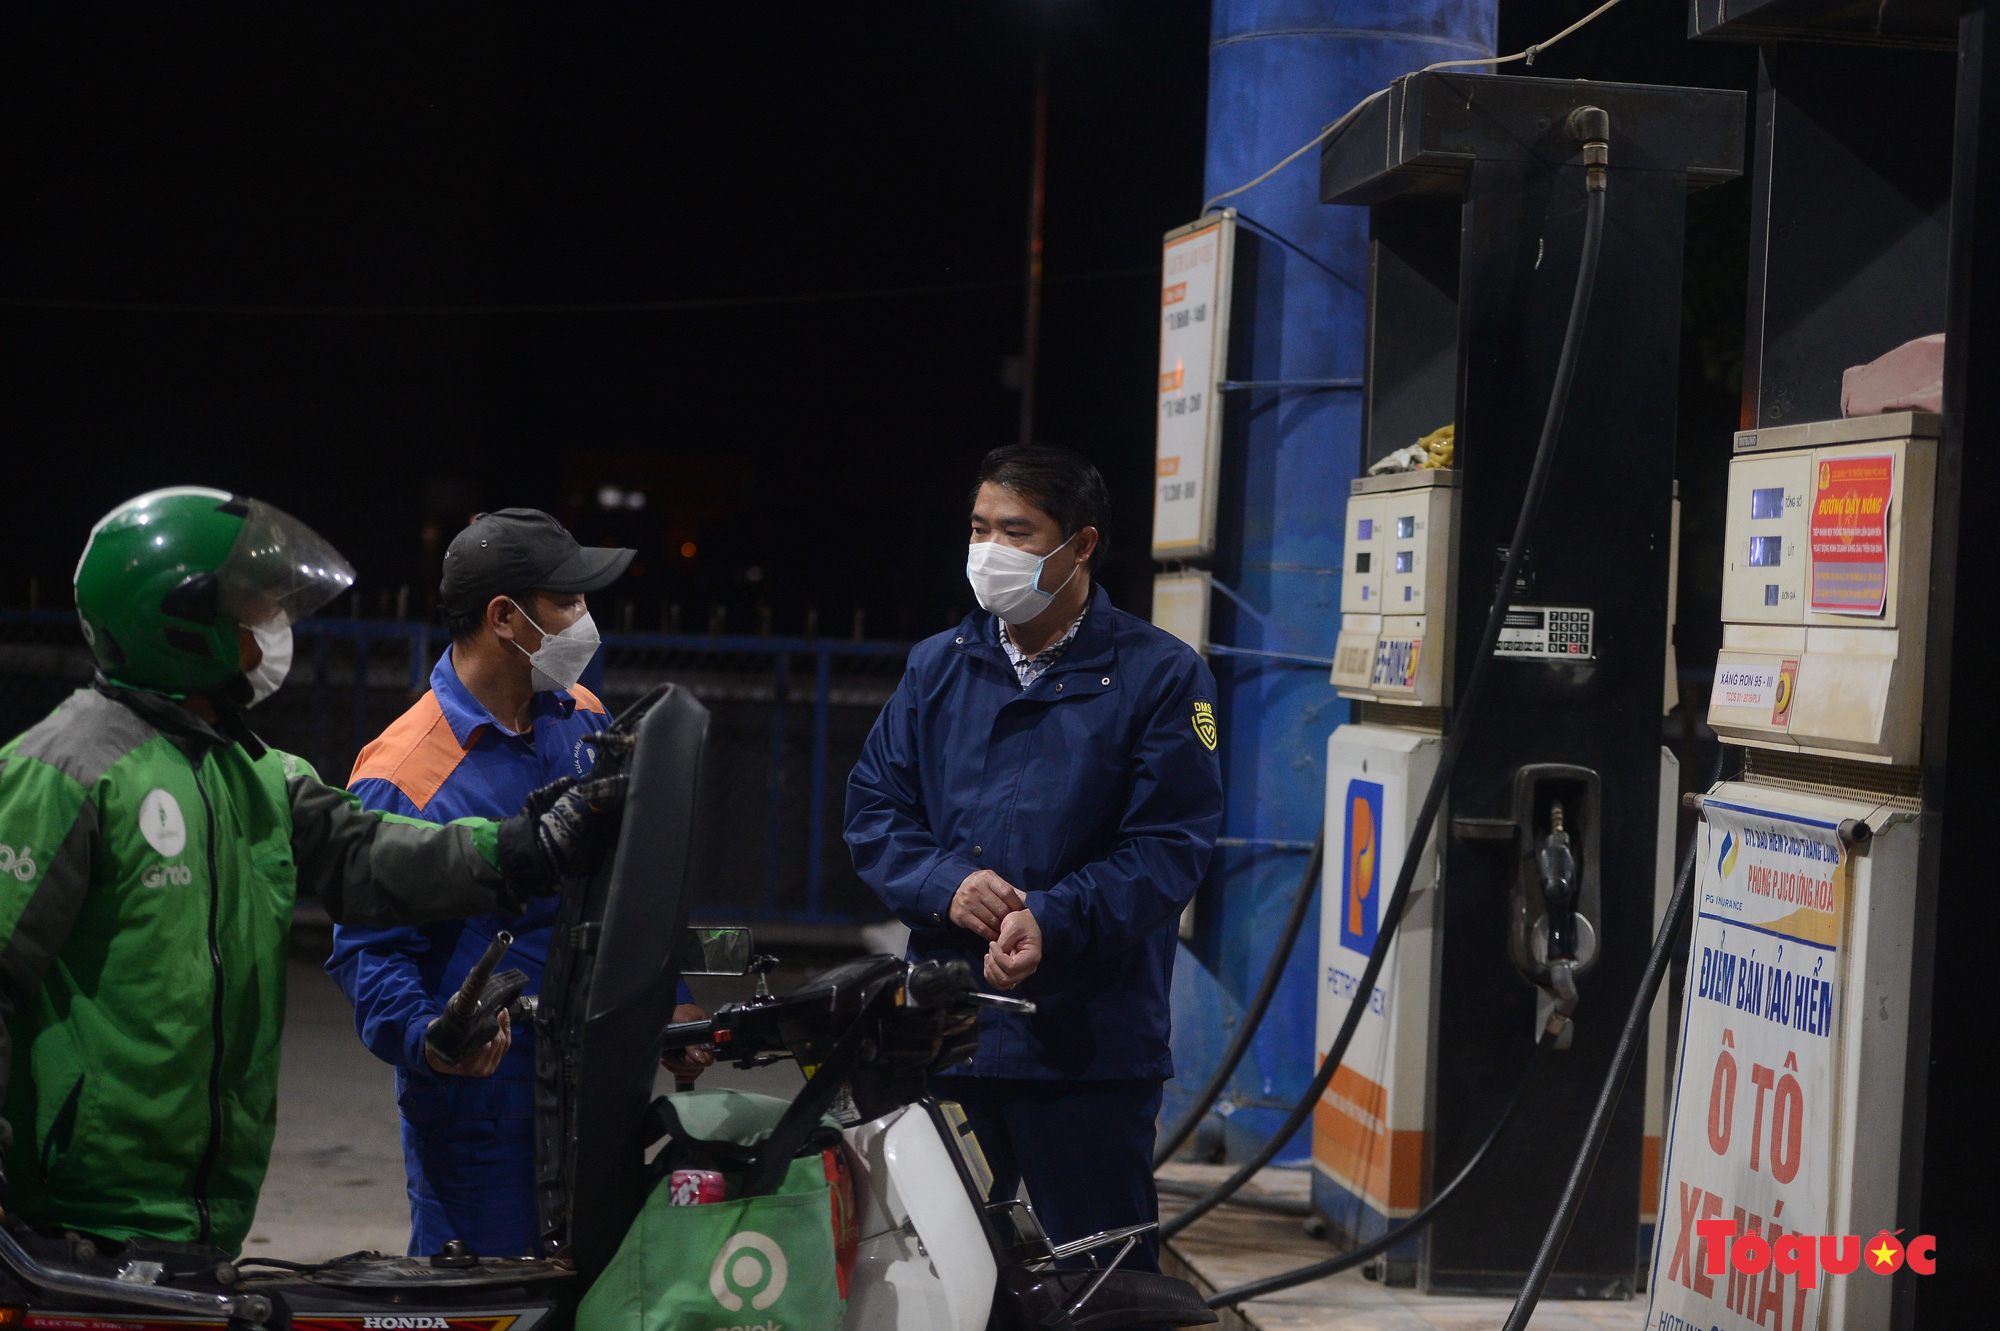 Hà Nội: Người dân xếp hàng dài mua xăng trước thông tin xăng tăng giá mạnh - Ảnh 14.